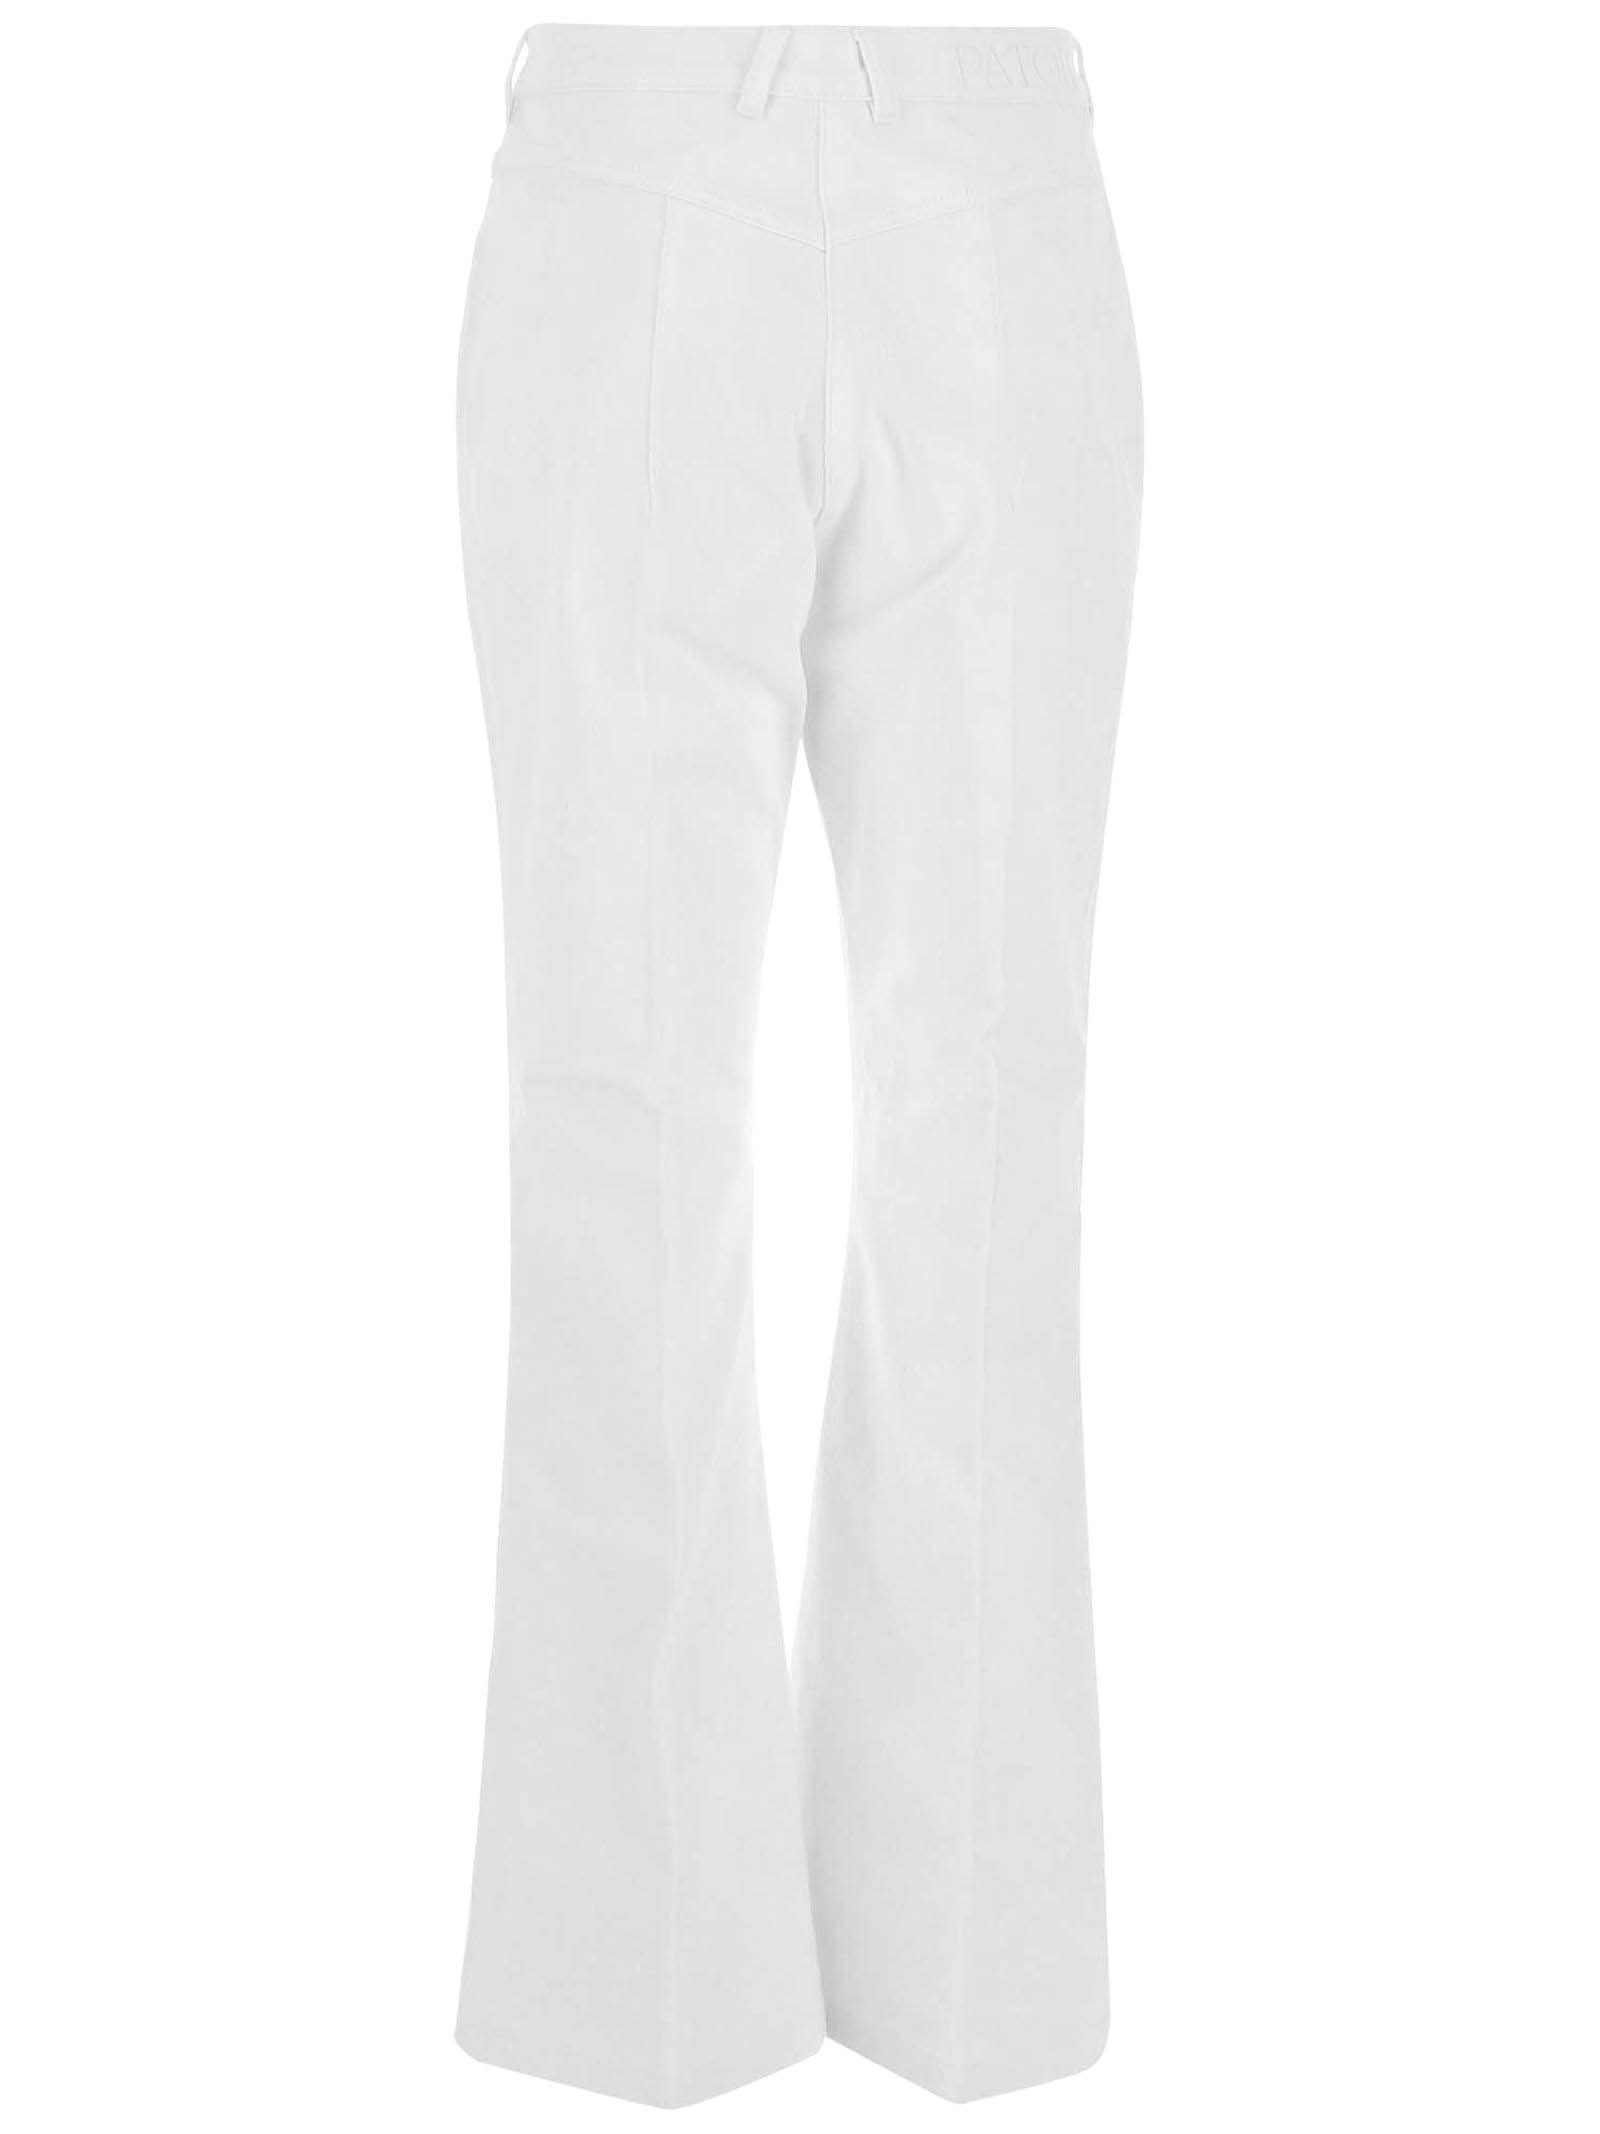 Shop Patou White Cotton Denim Jeans